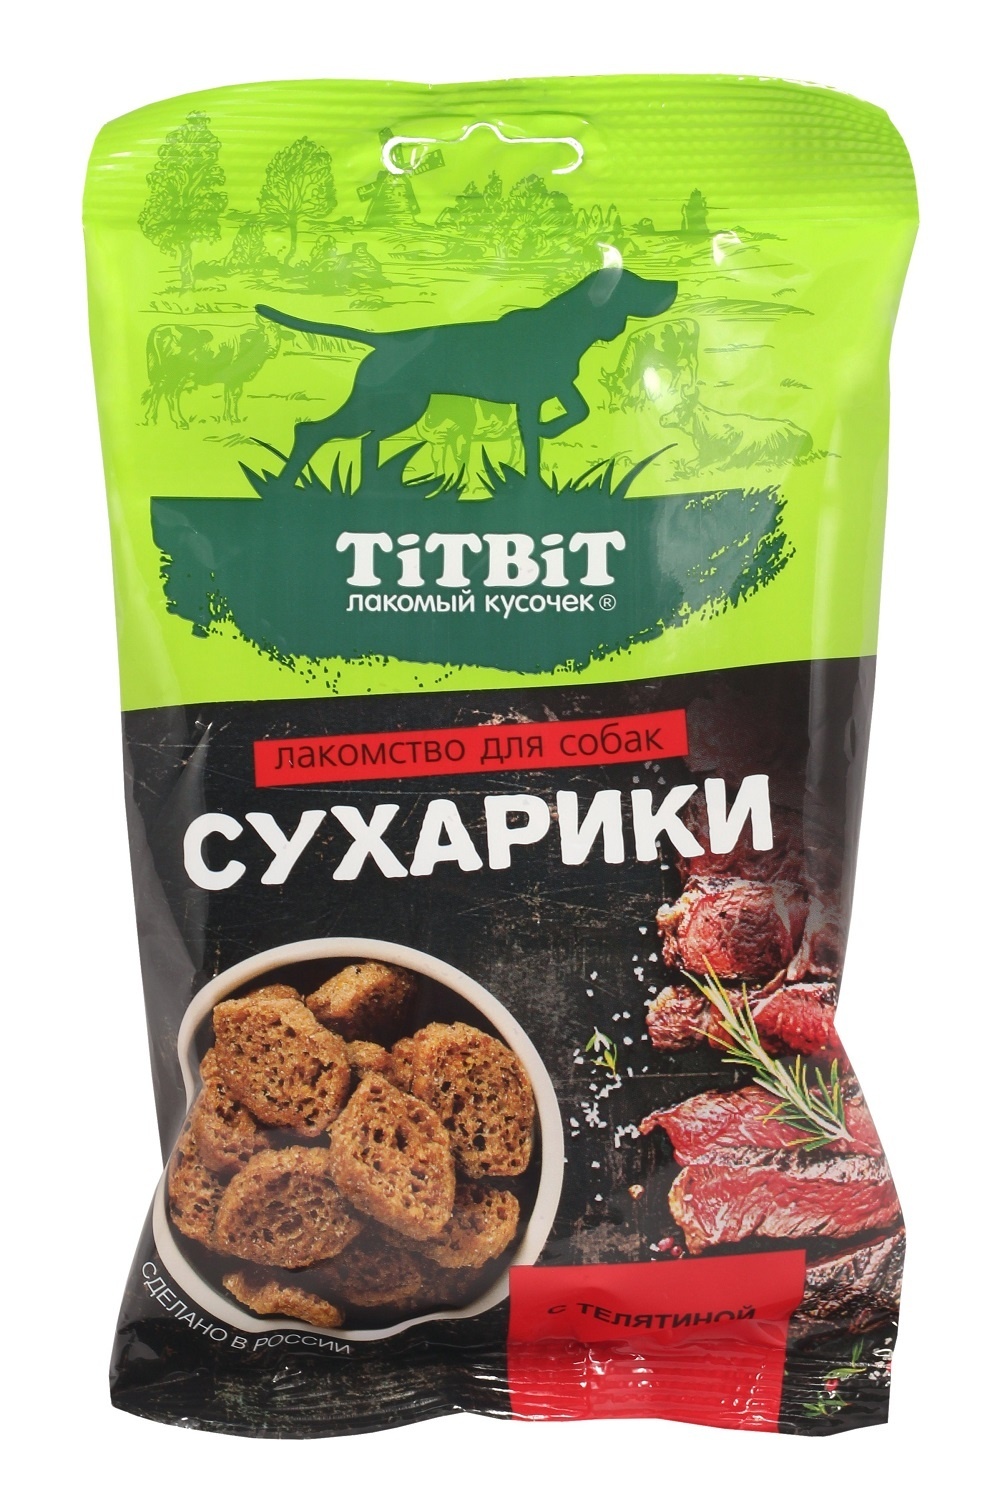 TiTBiT TiTBiT сухарики с телятиной, лакомство для собак (55 г) лакомство titbit сухарики с телятиной для собак 55 г